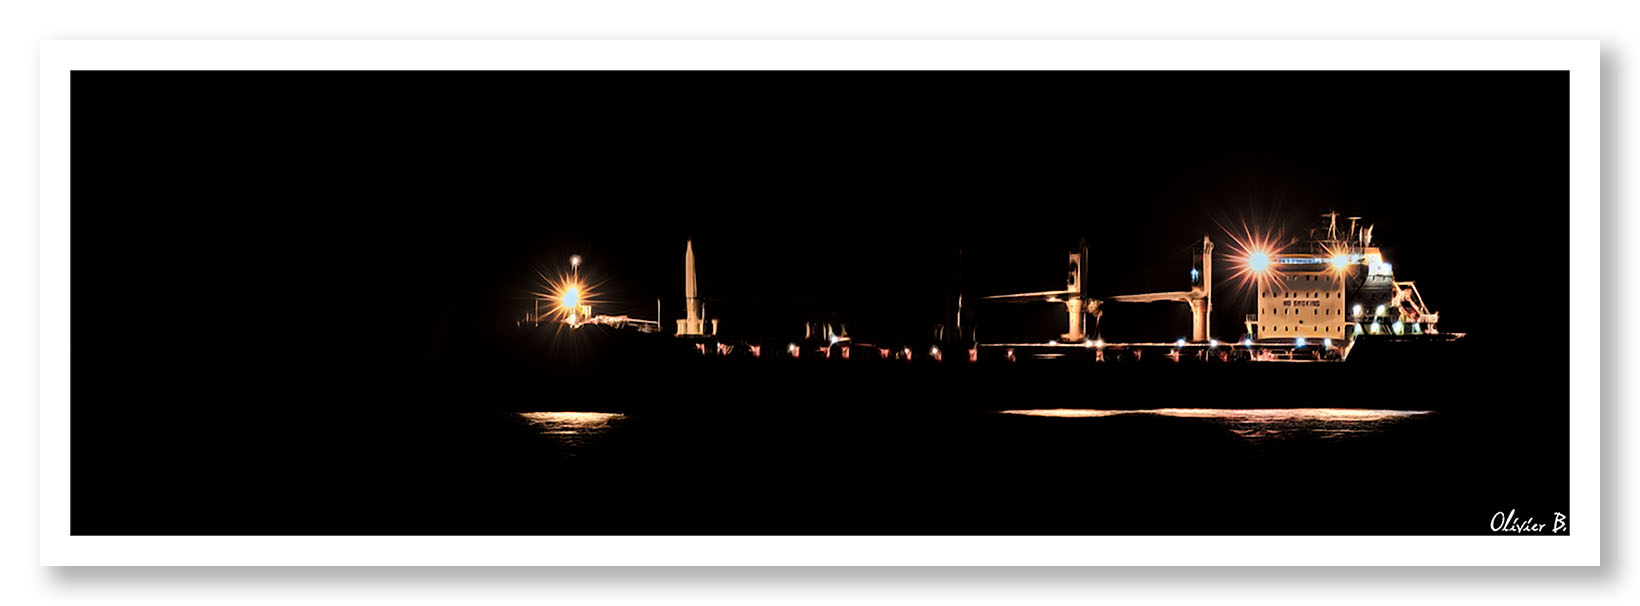 Un cargo sans coque se découpe dans la nuit, illuminé seulement par les lumières qui dessinent le pont